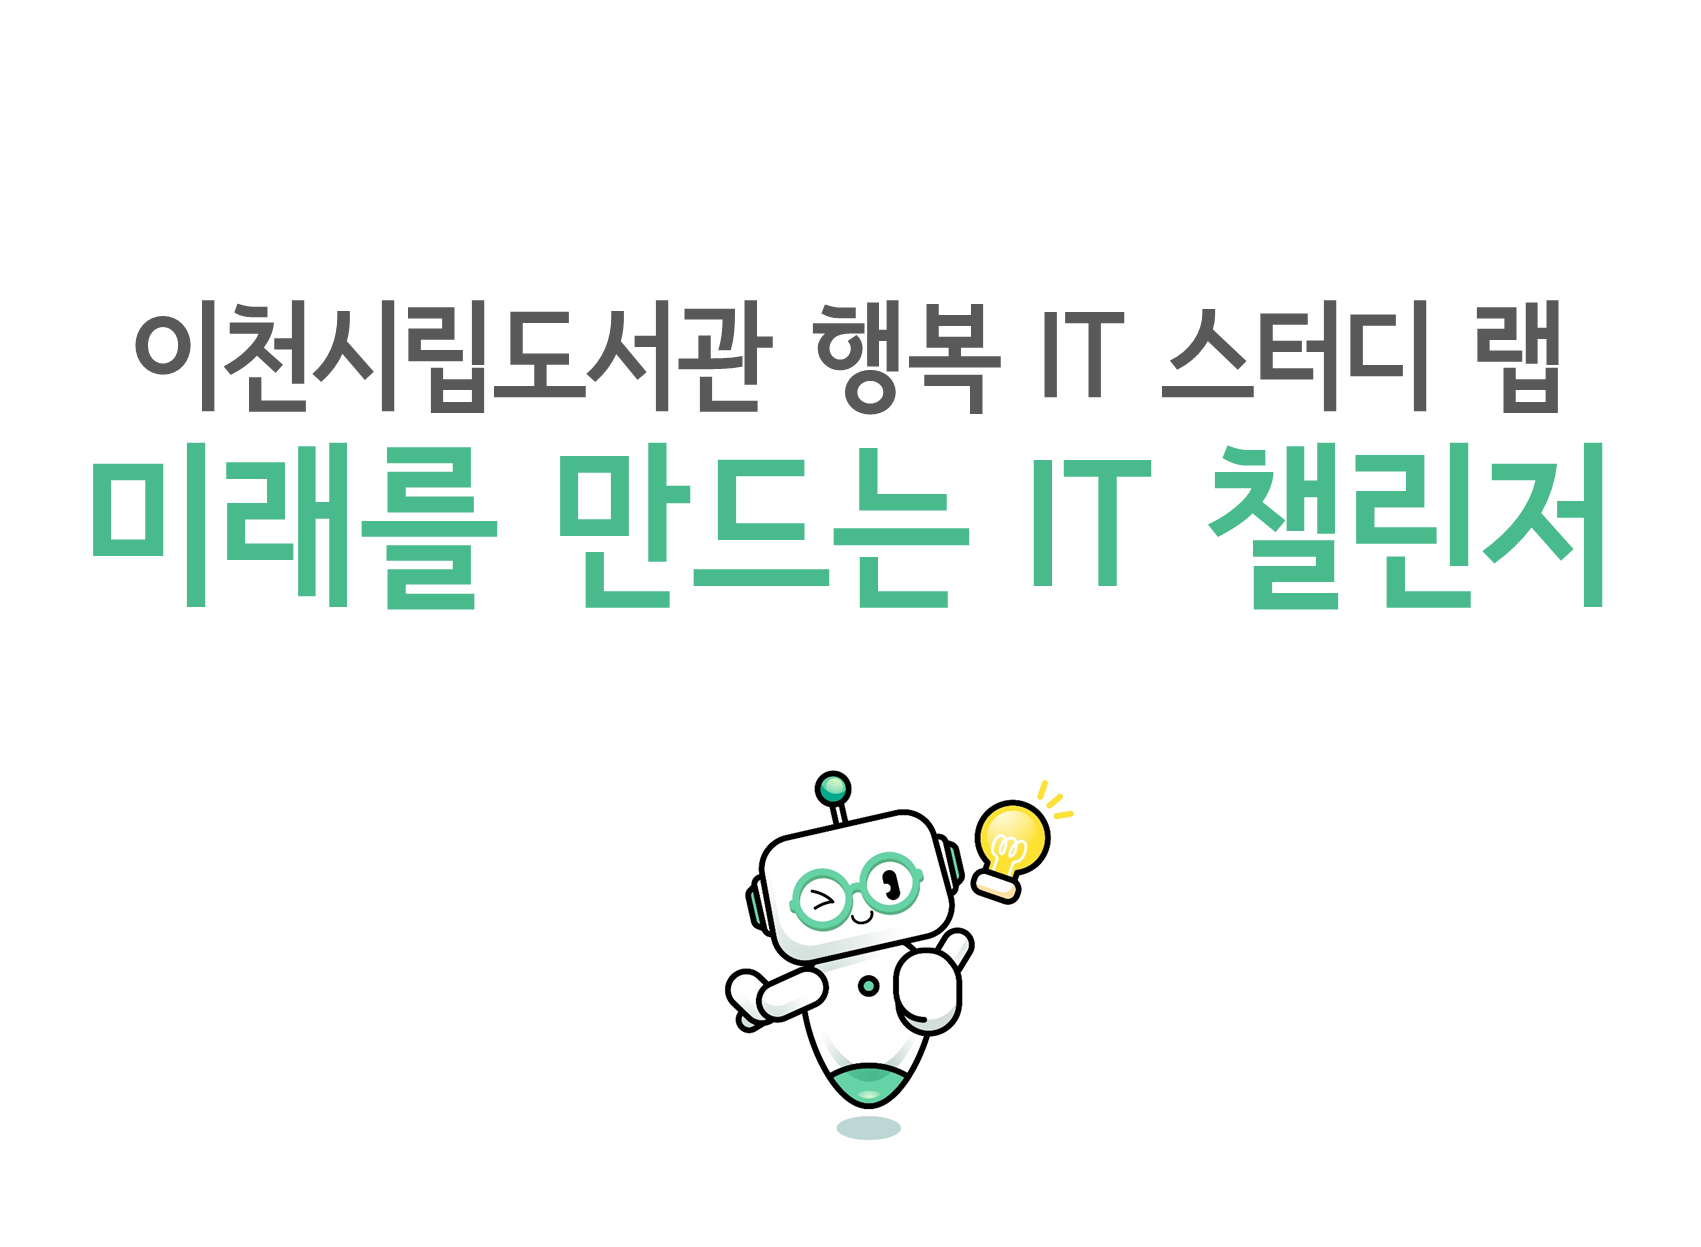 [행복 IT 스터디 랩] 정규강좌(주말)_코딩로봇 엠봇